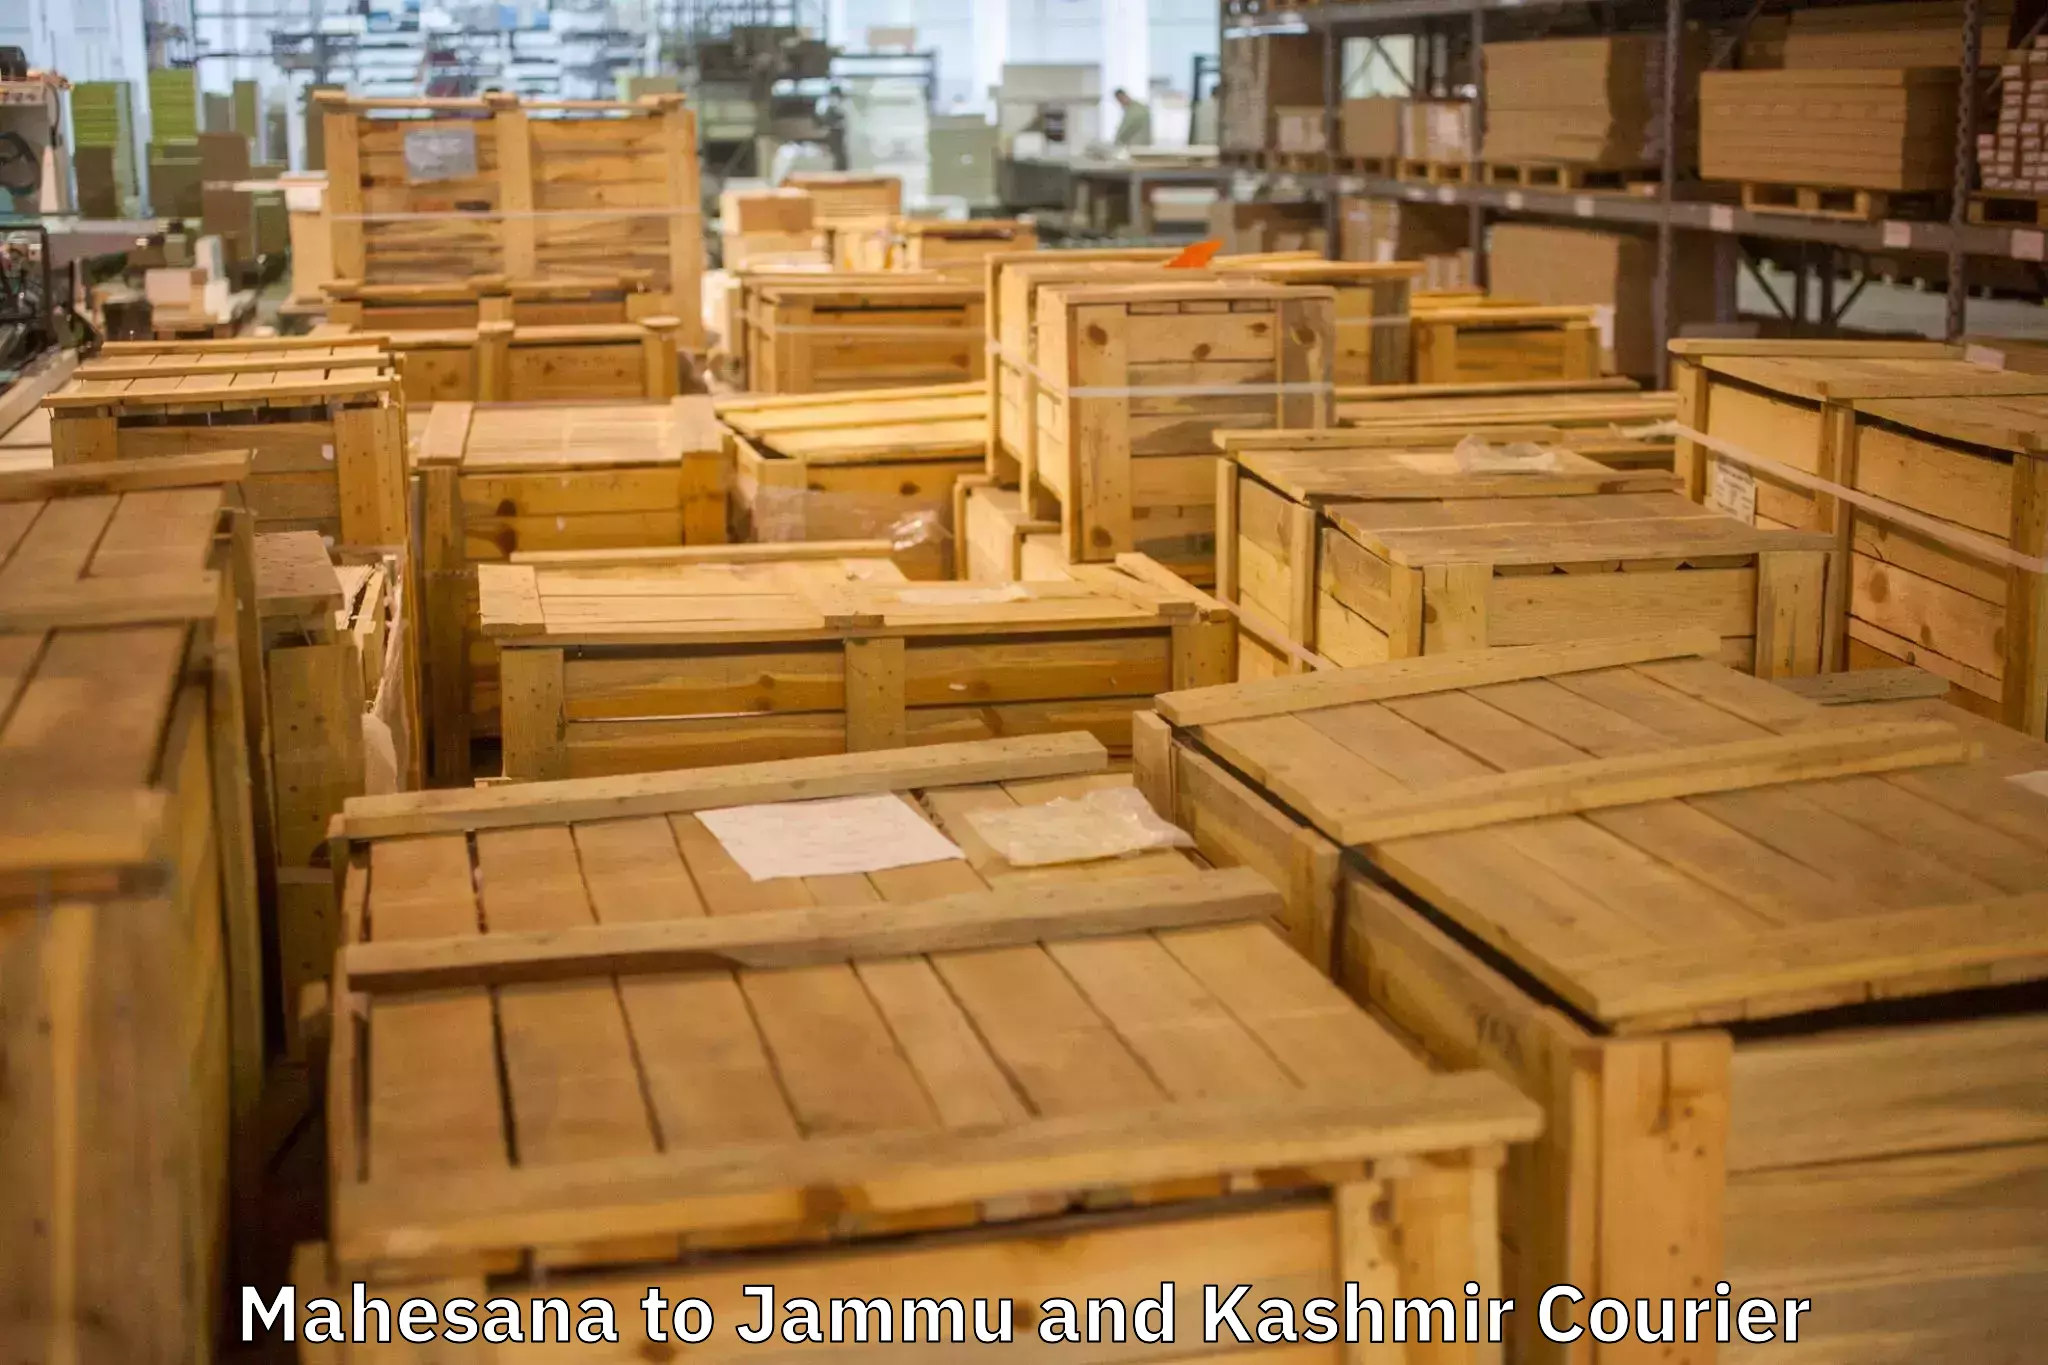 Home moving specialists Mahesana to Jammu and Kashmir